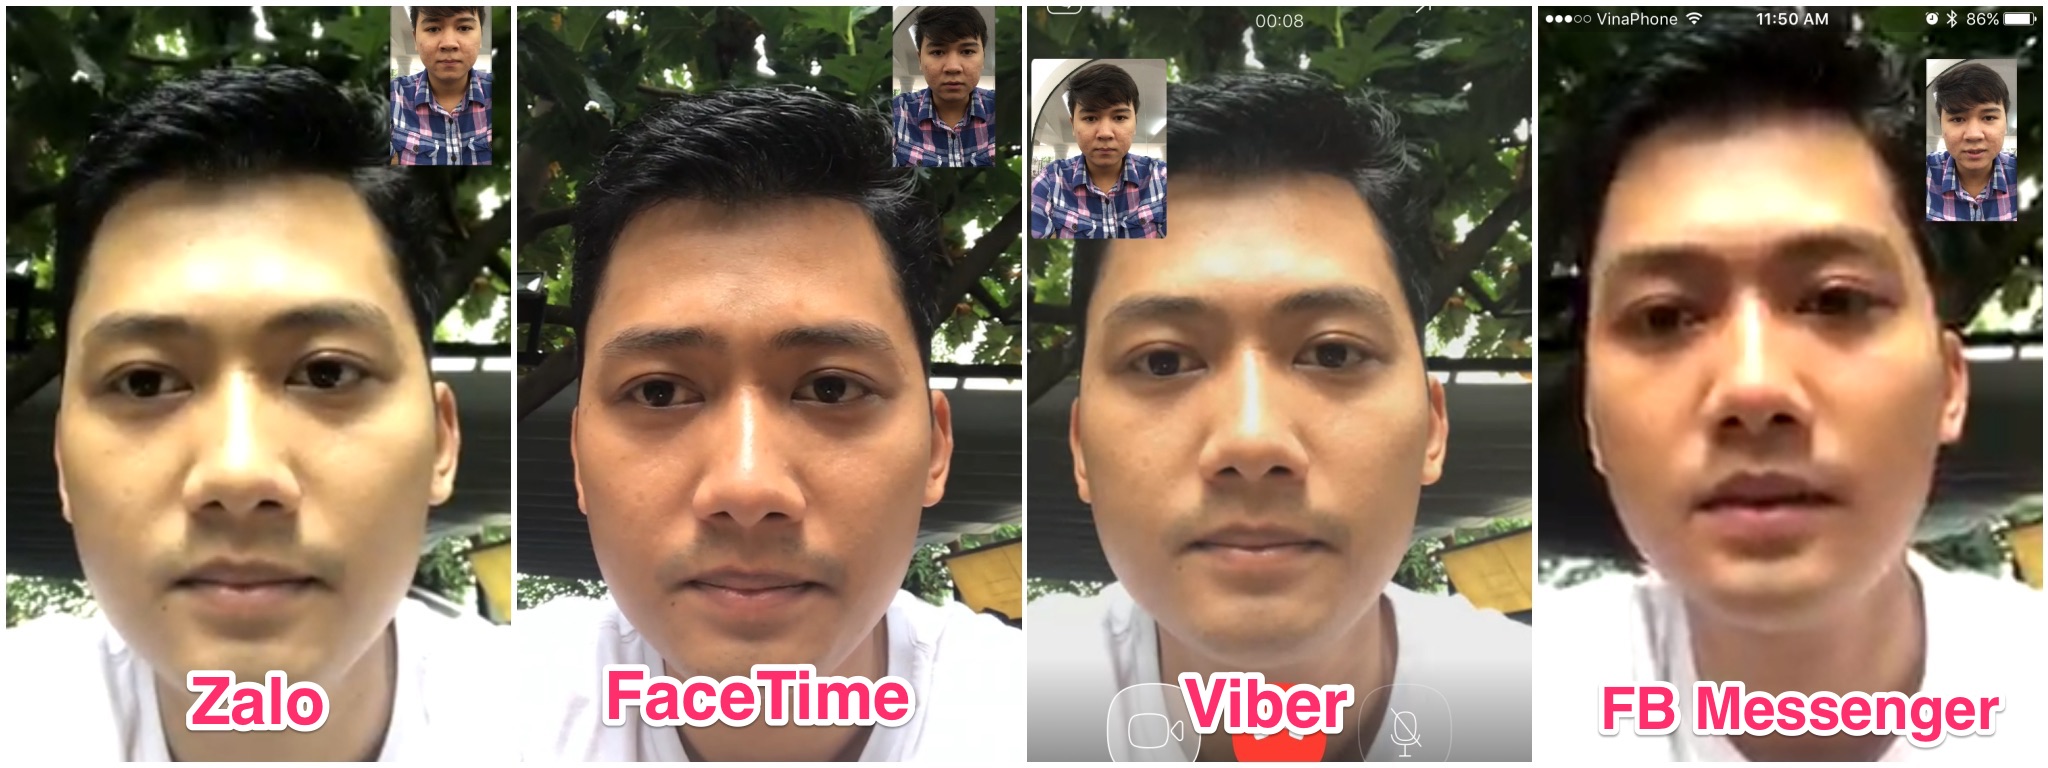 Thử video call bằng Zalo, so sánh với Facetime, Viber và Facebook Messenger